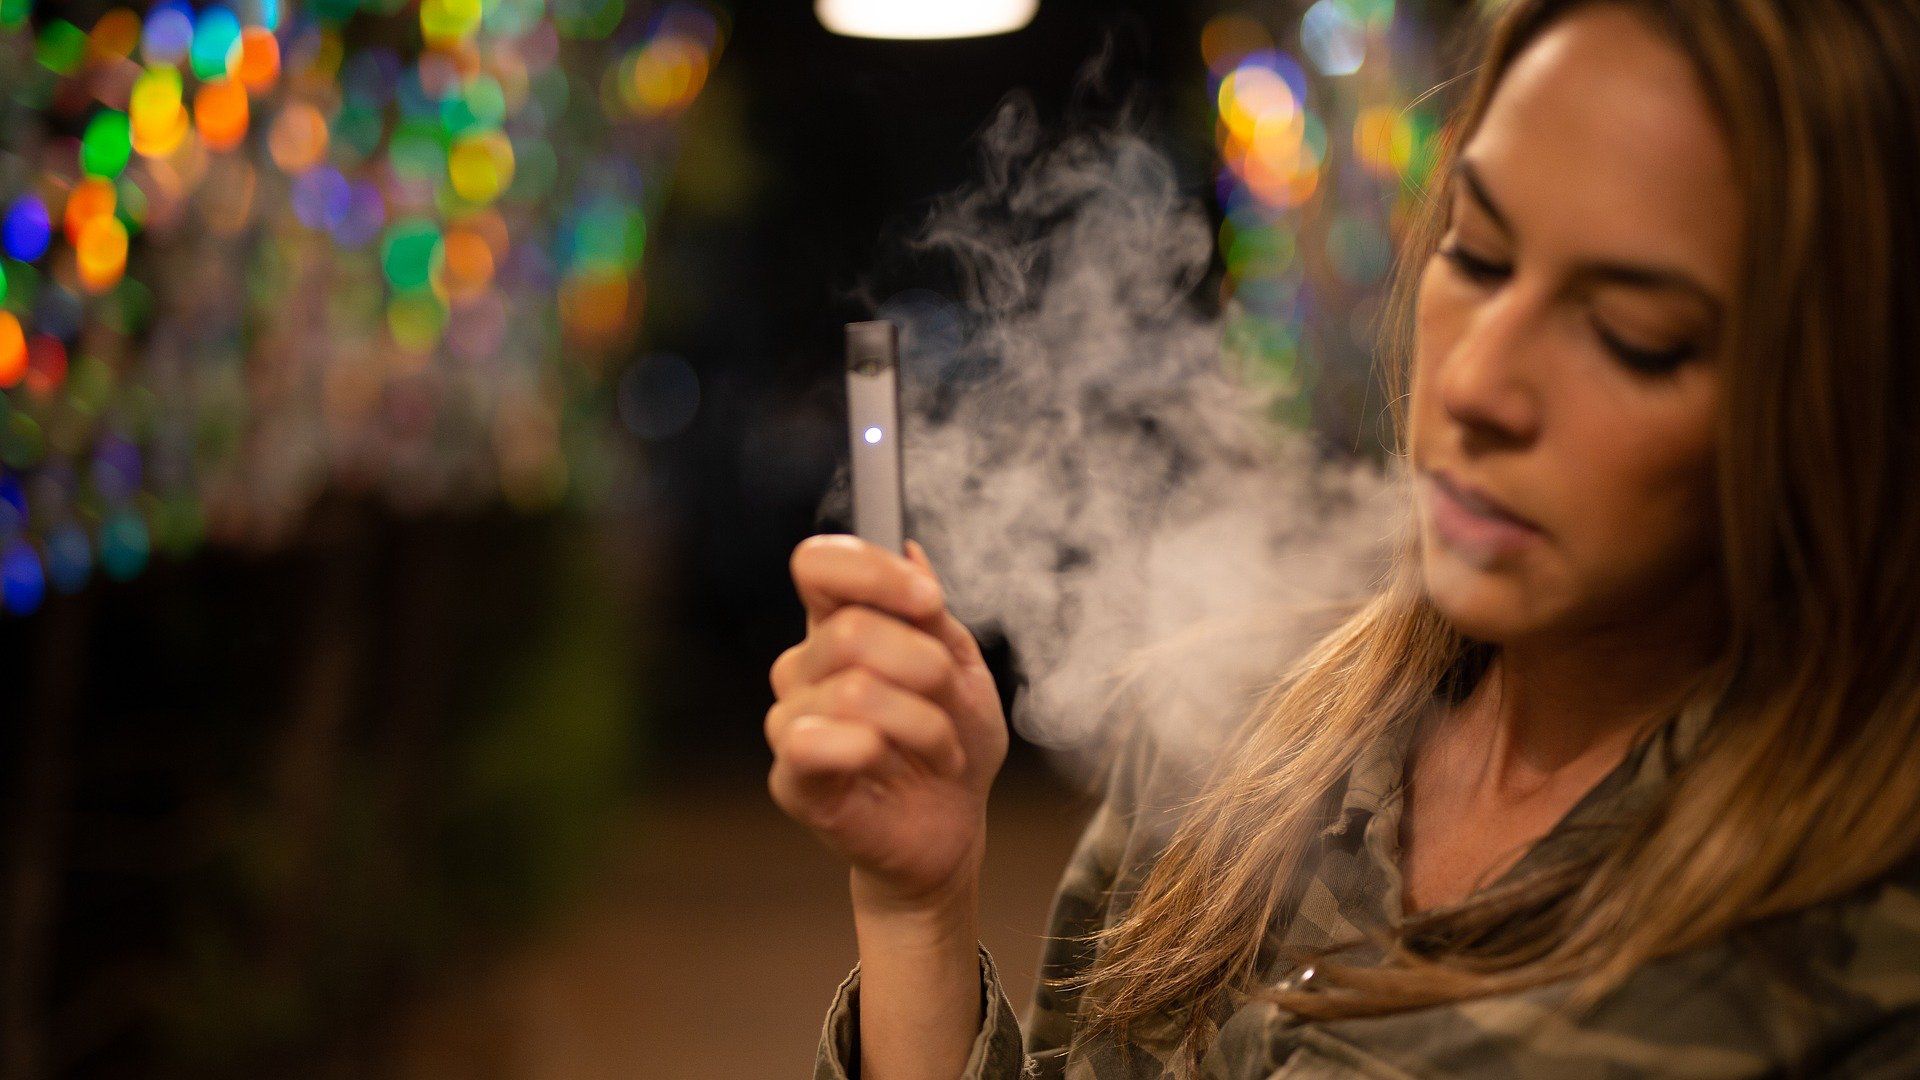 oliver kahn hogyan lehet leszokni a dohányzásról aki az eco után nem hagyta abba a dohányzást